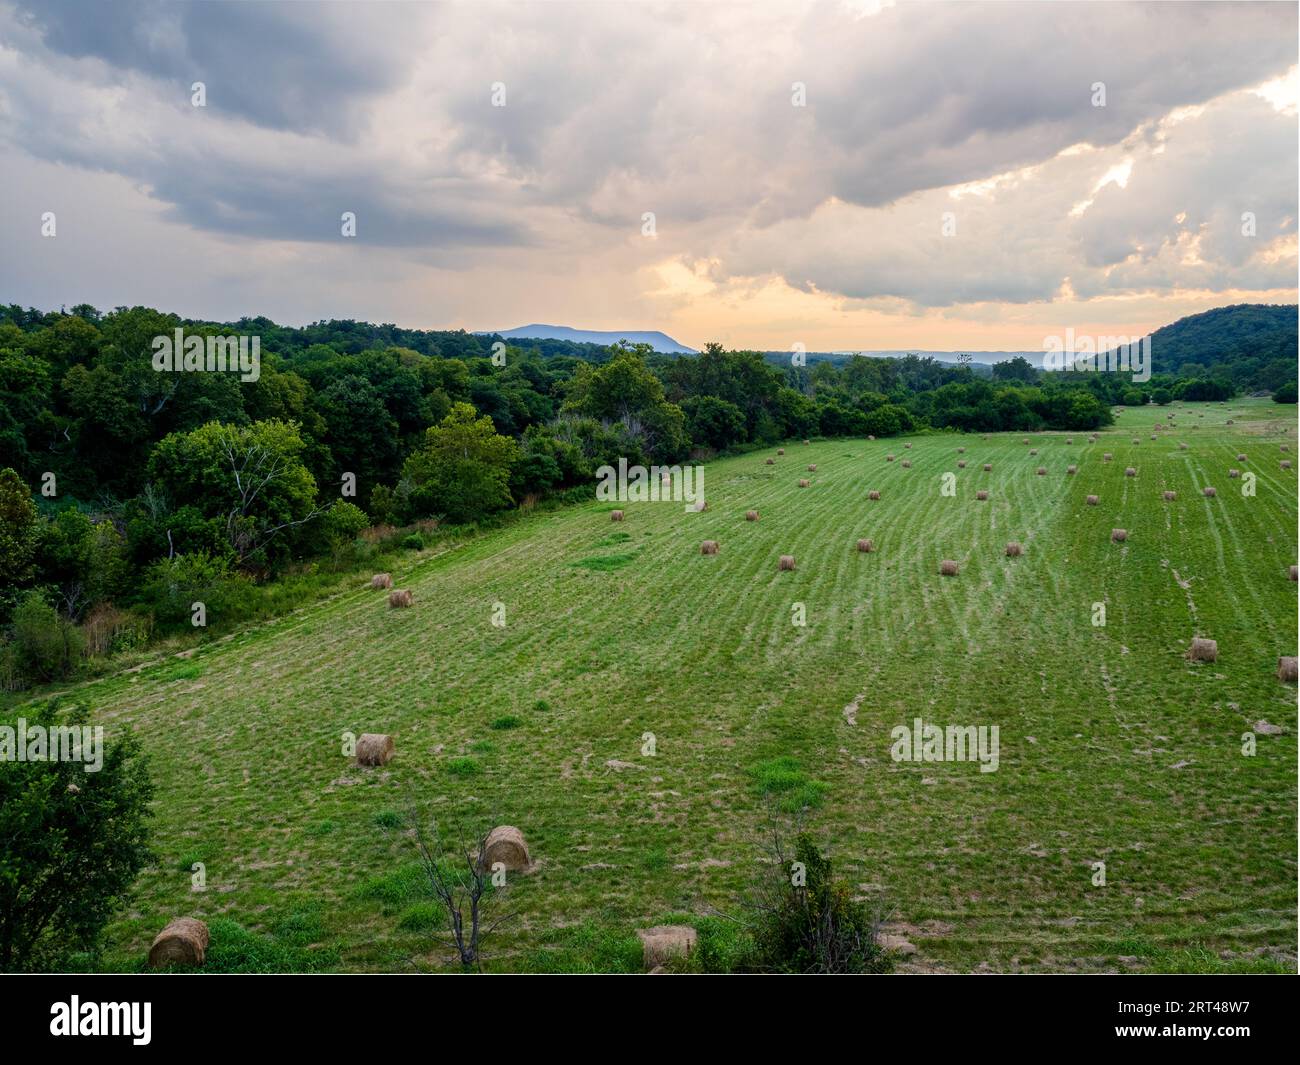 Un champ ouvert avec des balles de foin surplombant la vallée de Shenandoah, baigné dans les teintes chaudes des nuages de coucher de soleil, près de Front Royal, Virginie, États-Unis. Banque D'Images